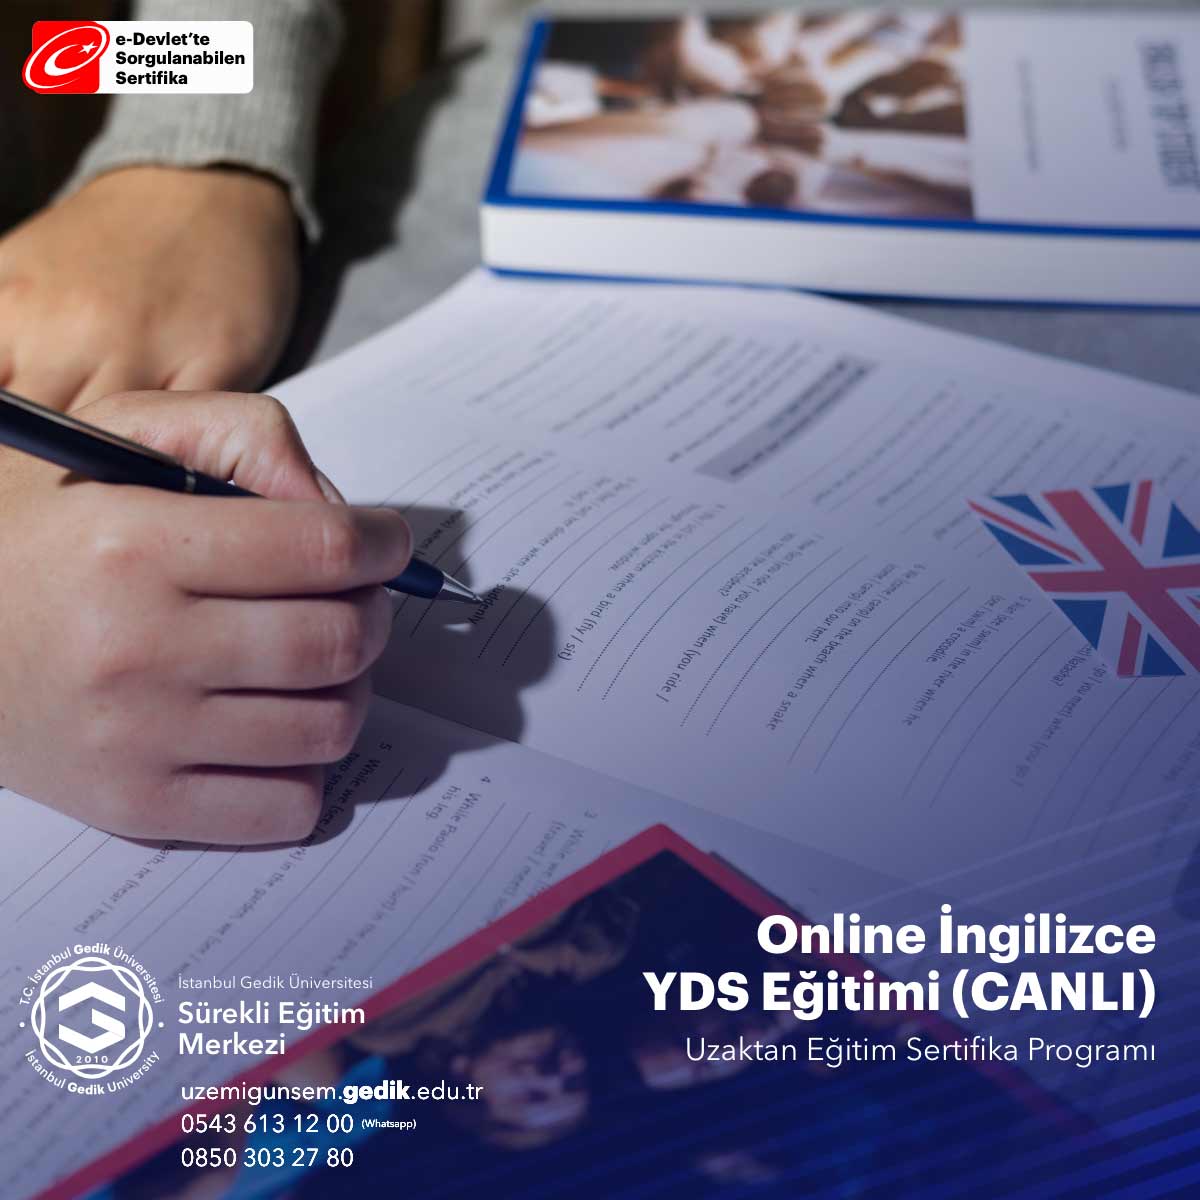 Online İngilizce YDS Eğitimi (CANLI)